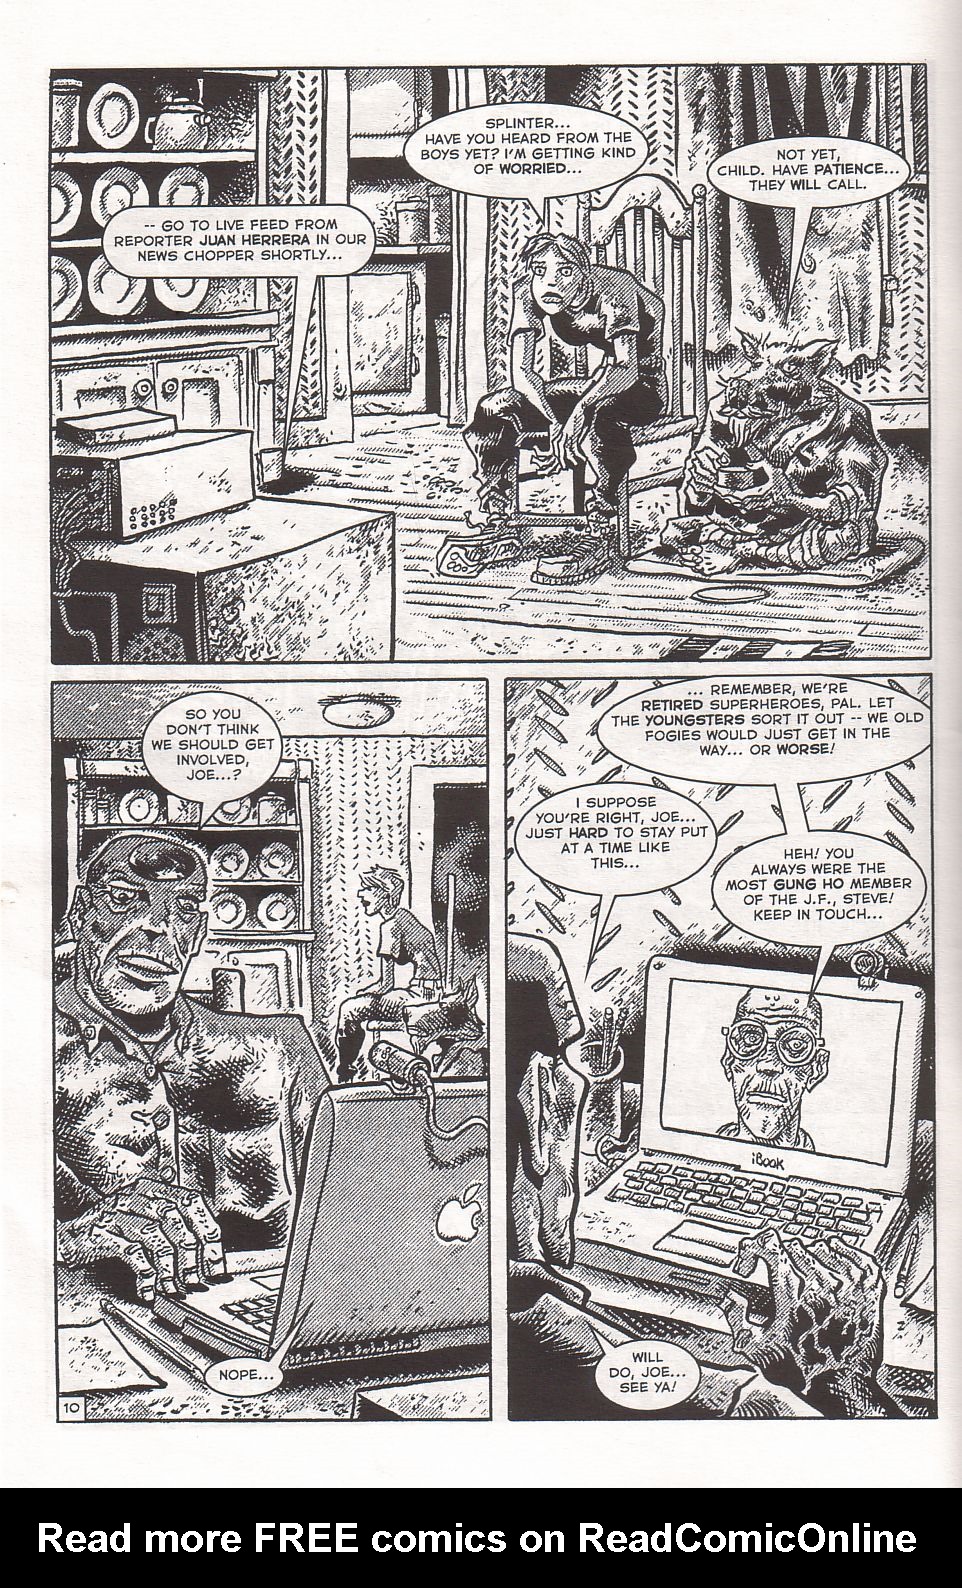 Read online TMNT: Teenage Mutant Ninja Turtles comic -  Issue #4 - 12